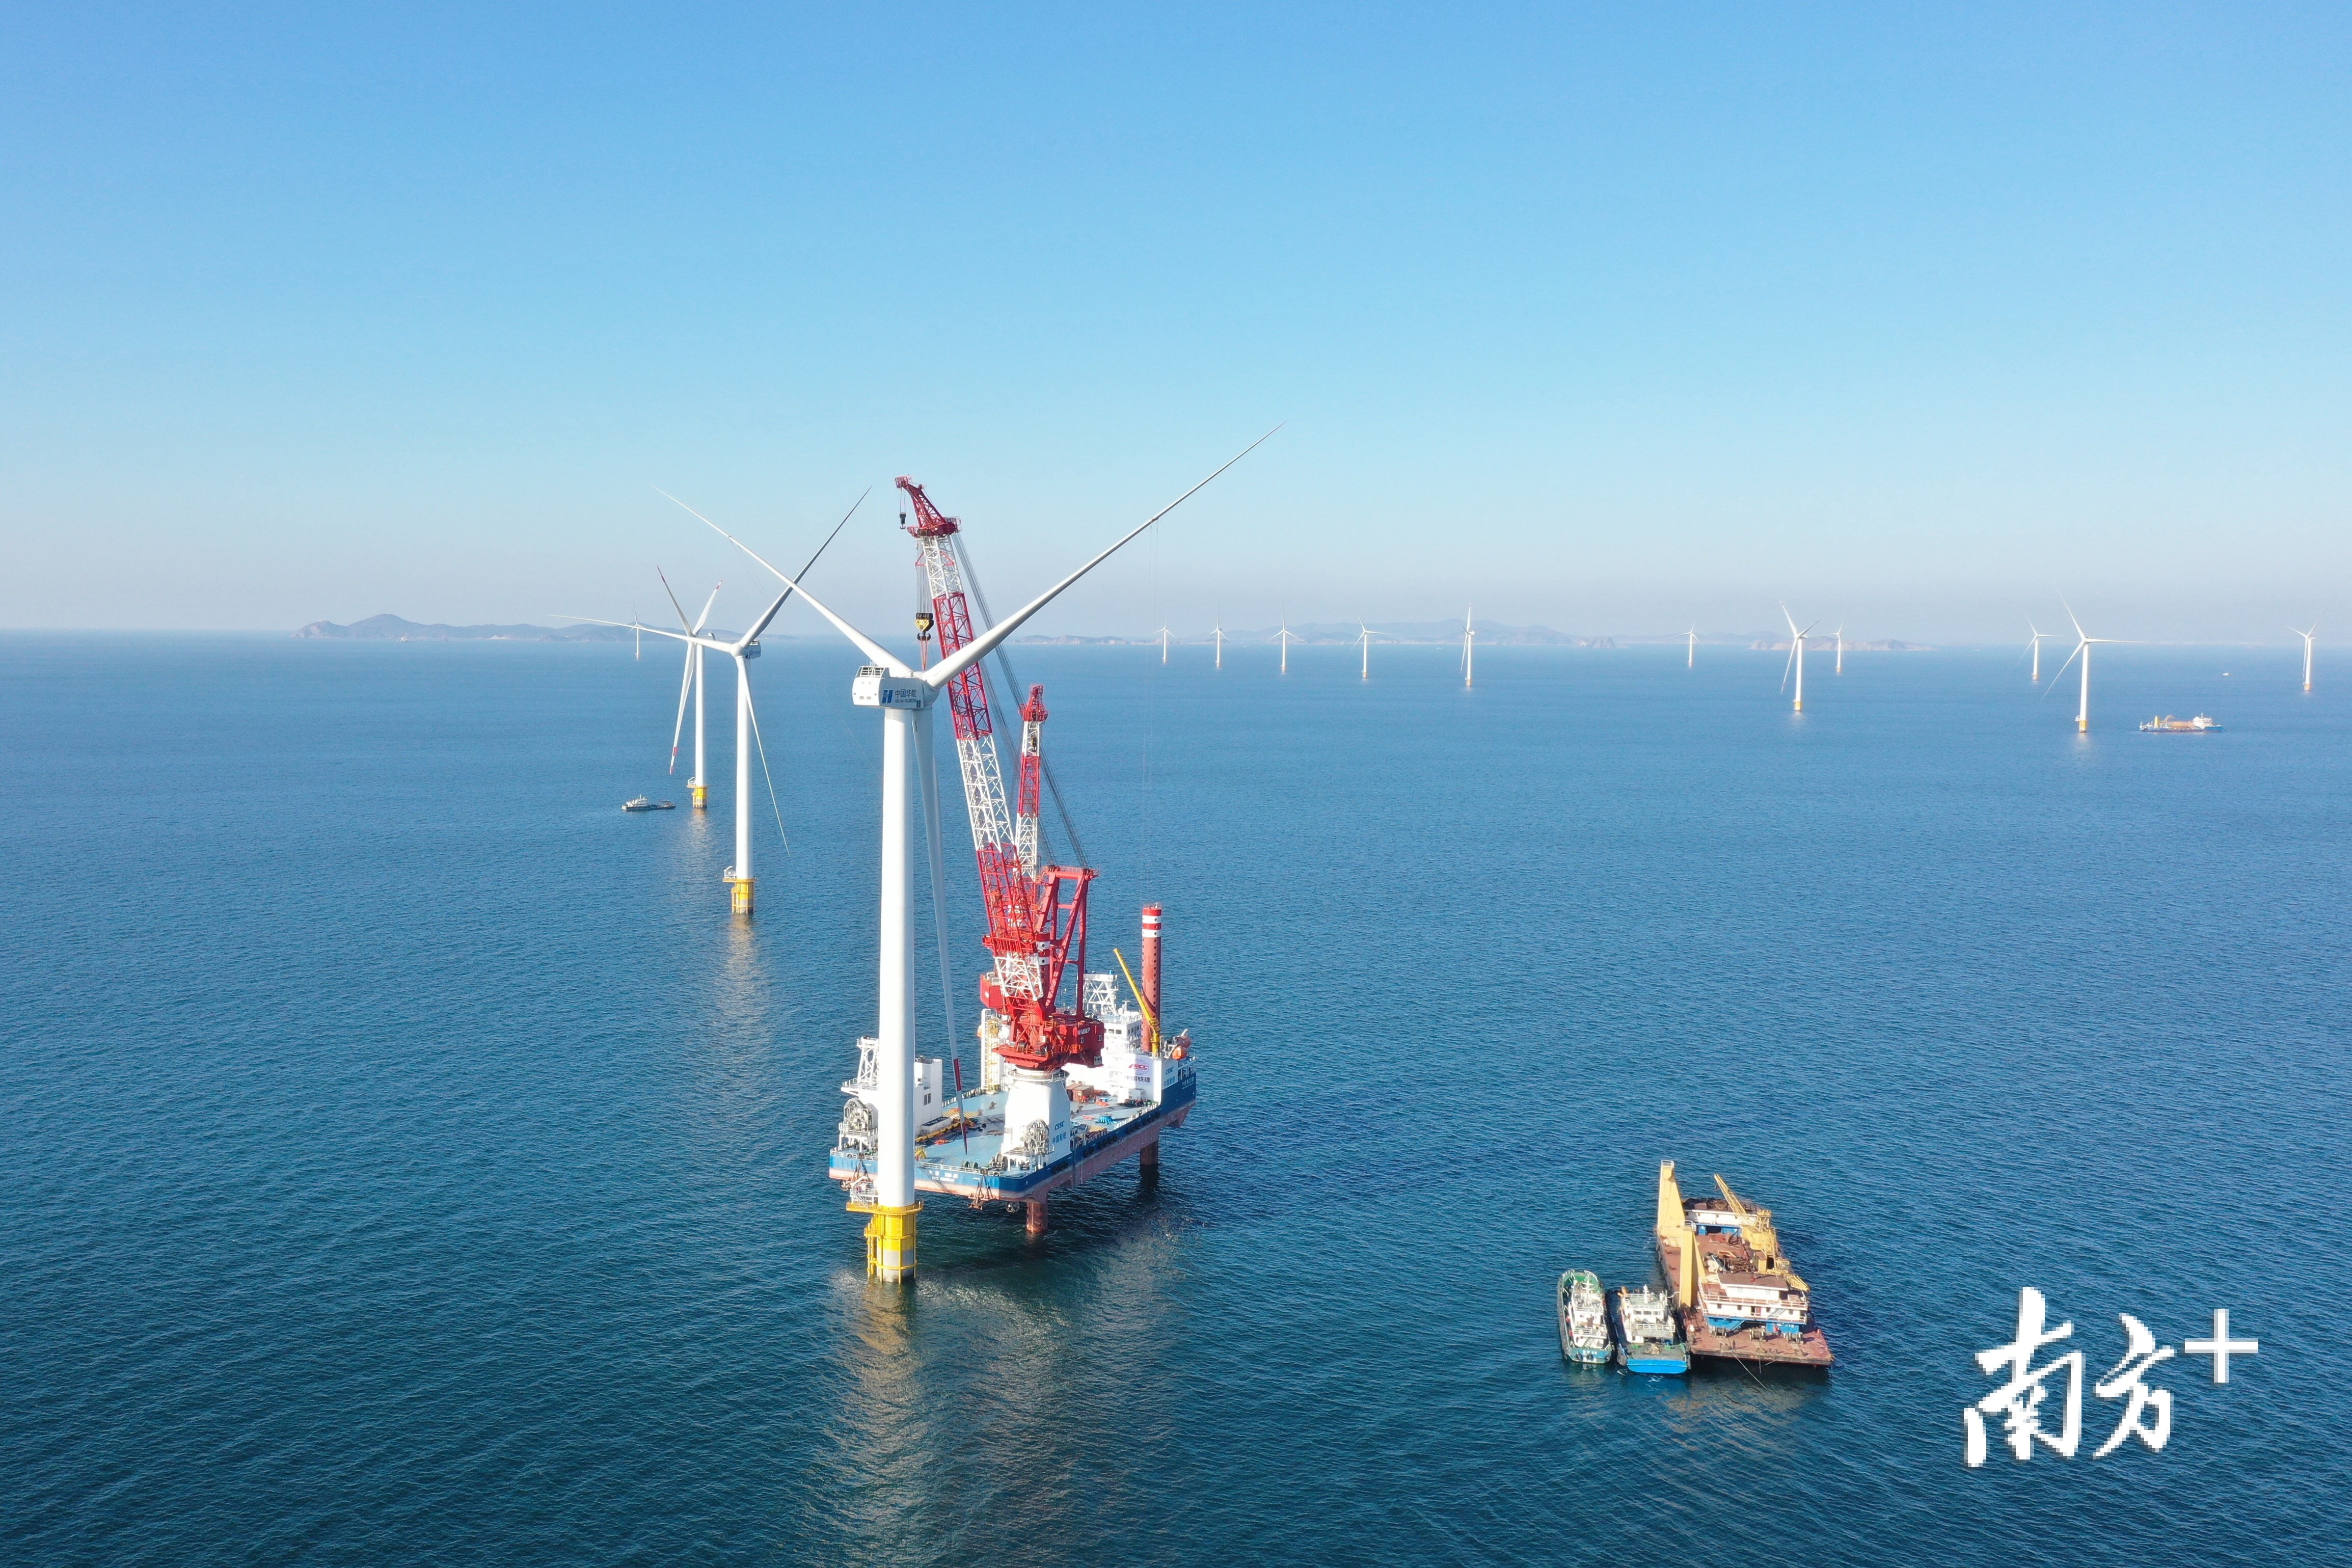 大连庄河海上风电场址Ⅱ项目2020年完成最后一台风机安装